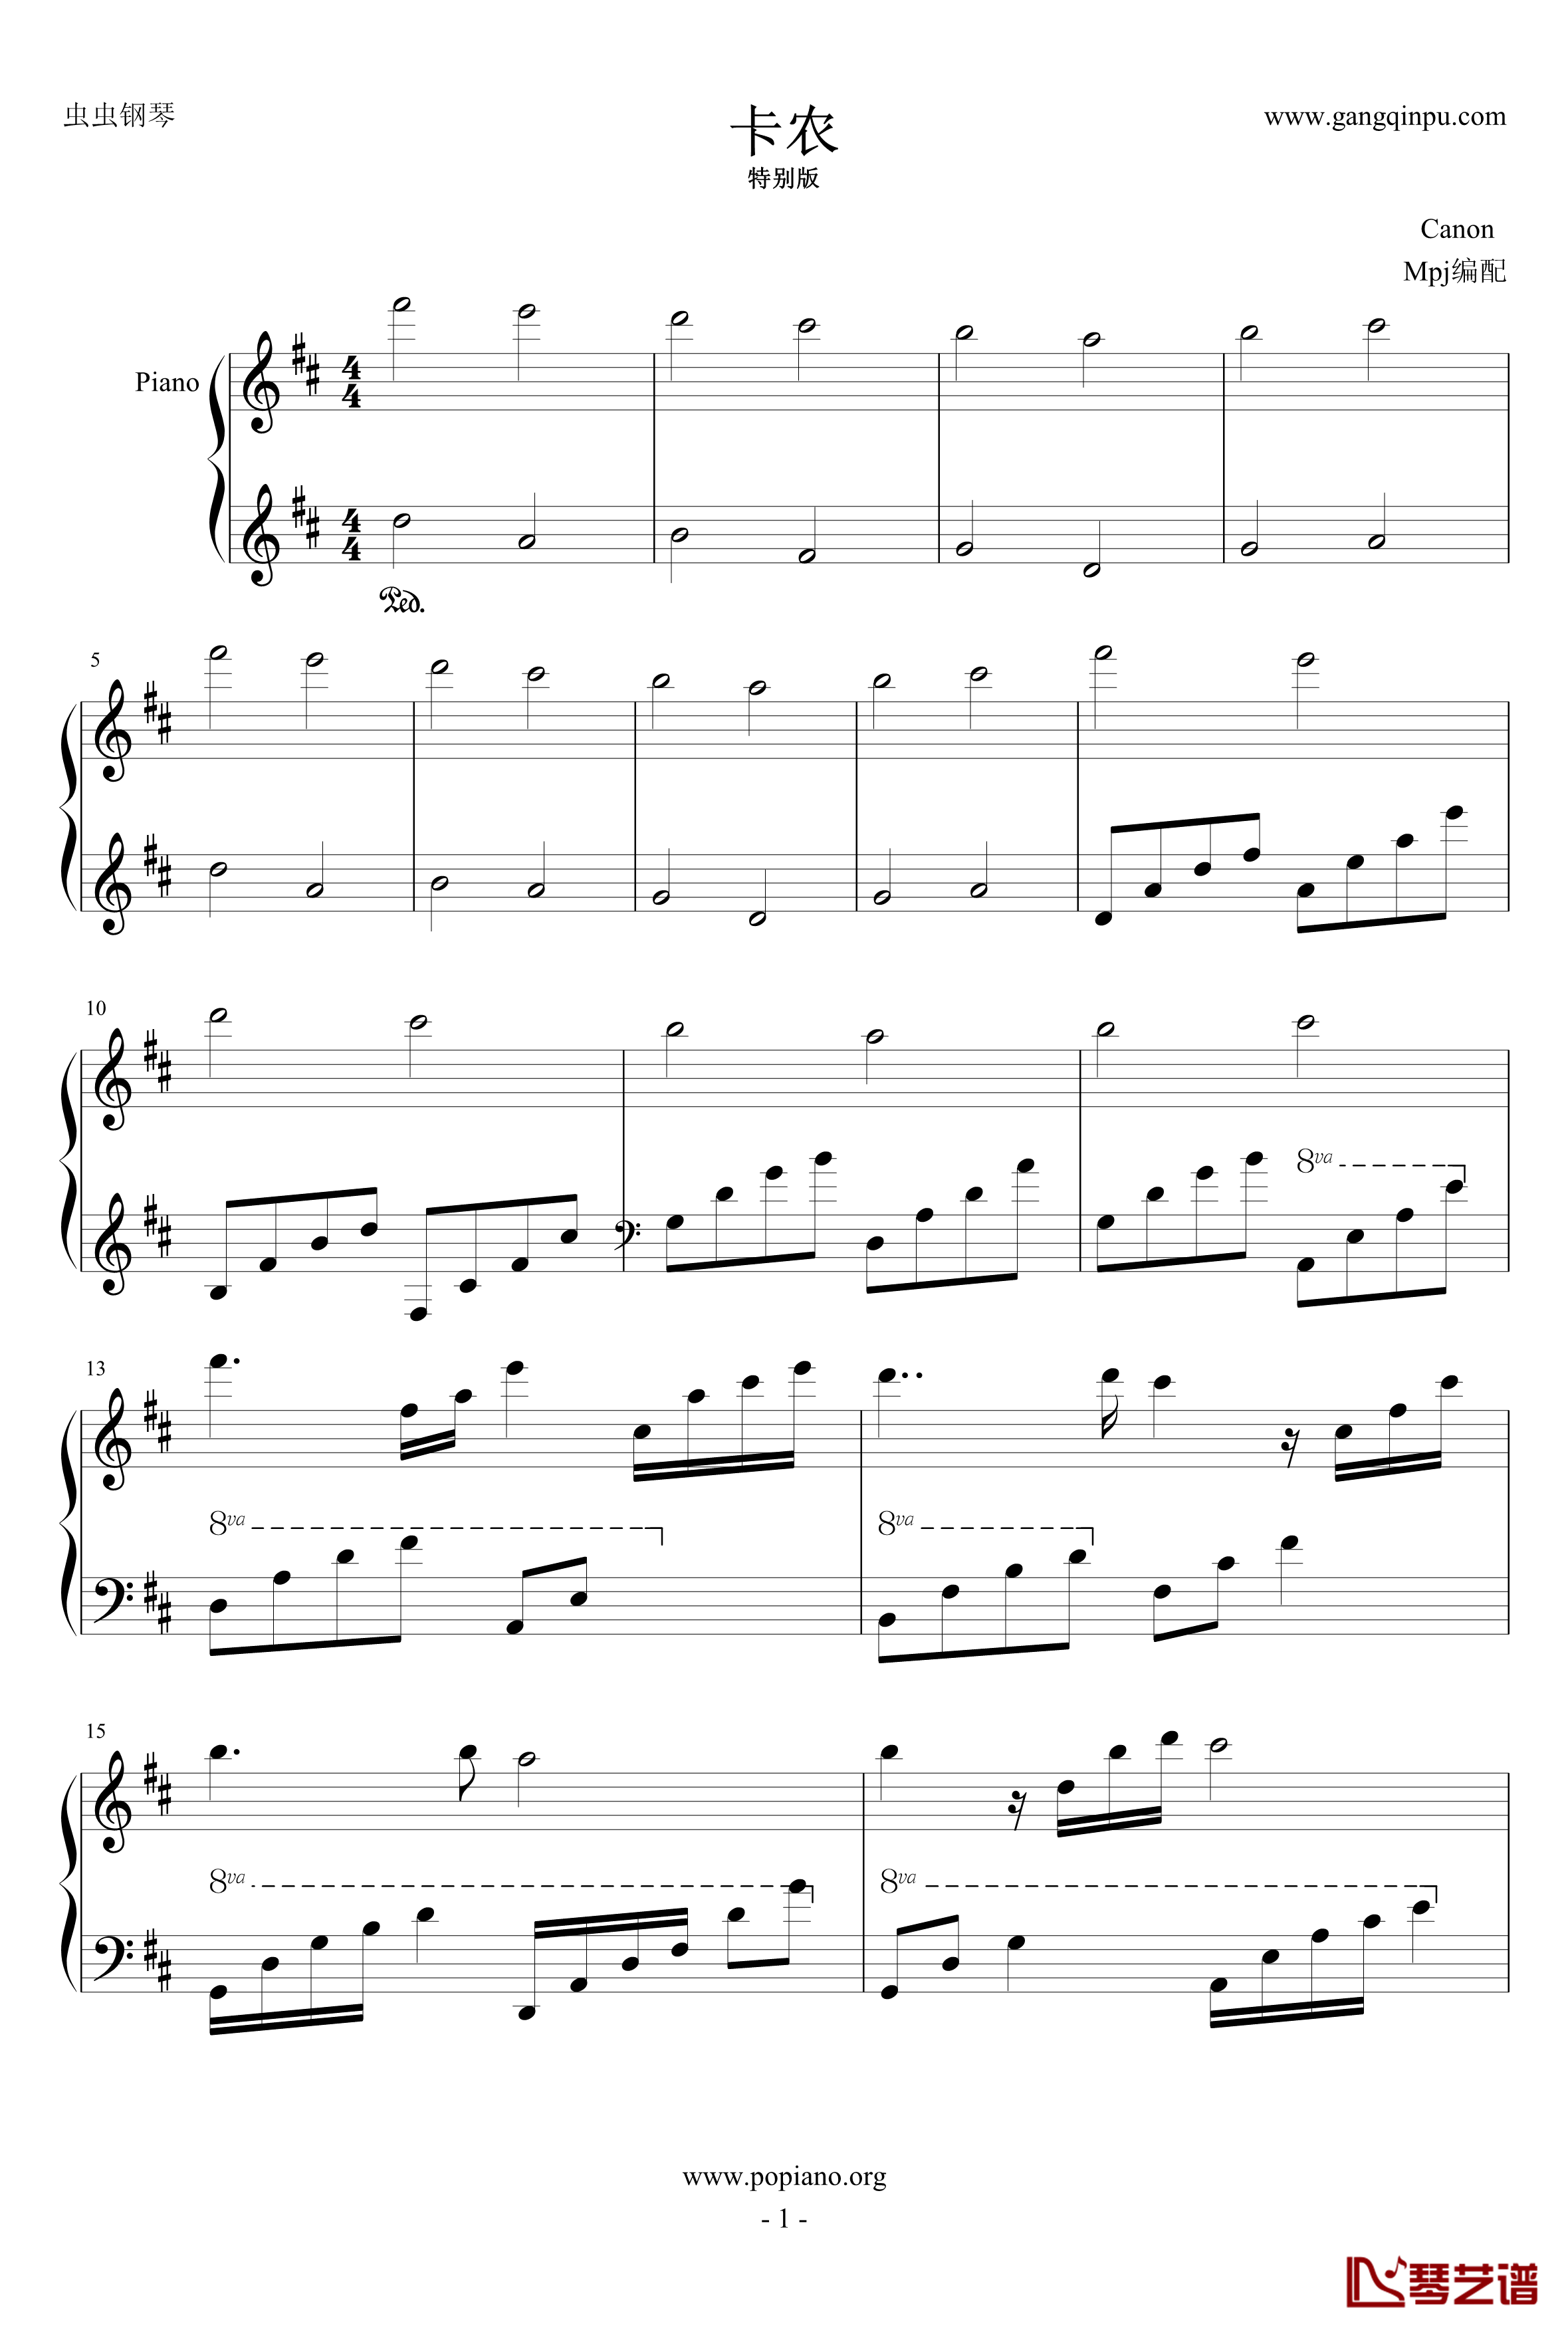 卡农钢琴谱-帕赫贝尔-Pachelbel1